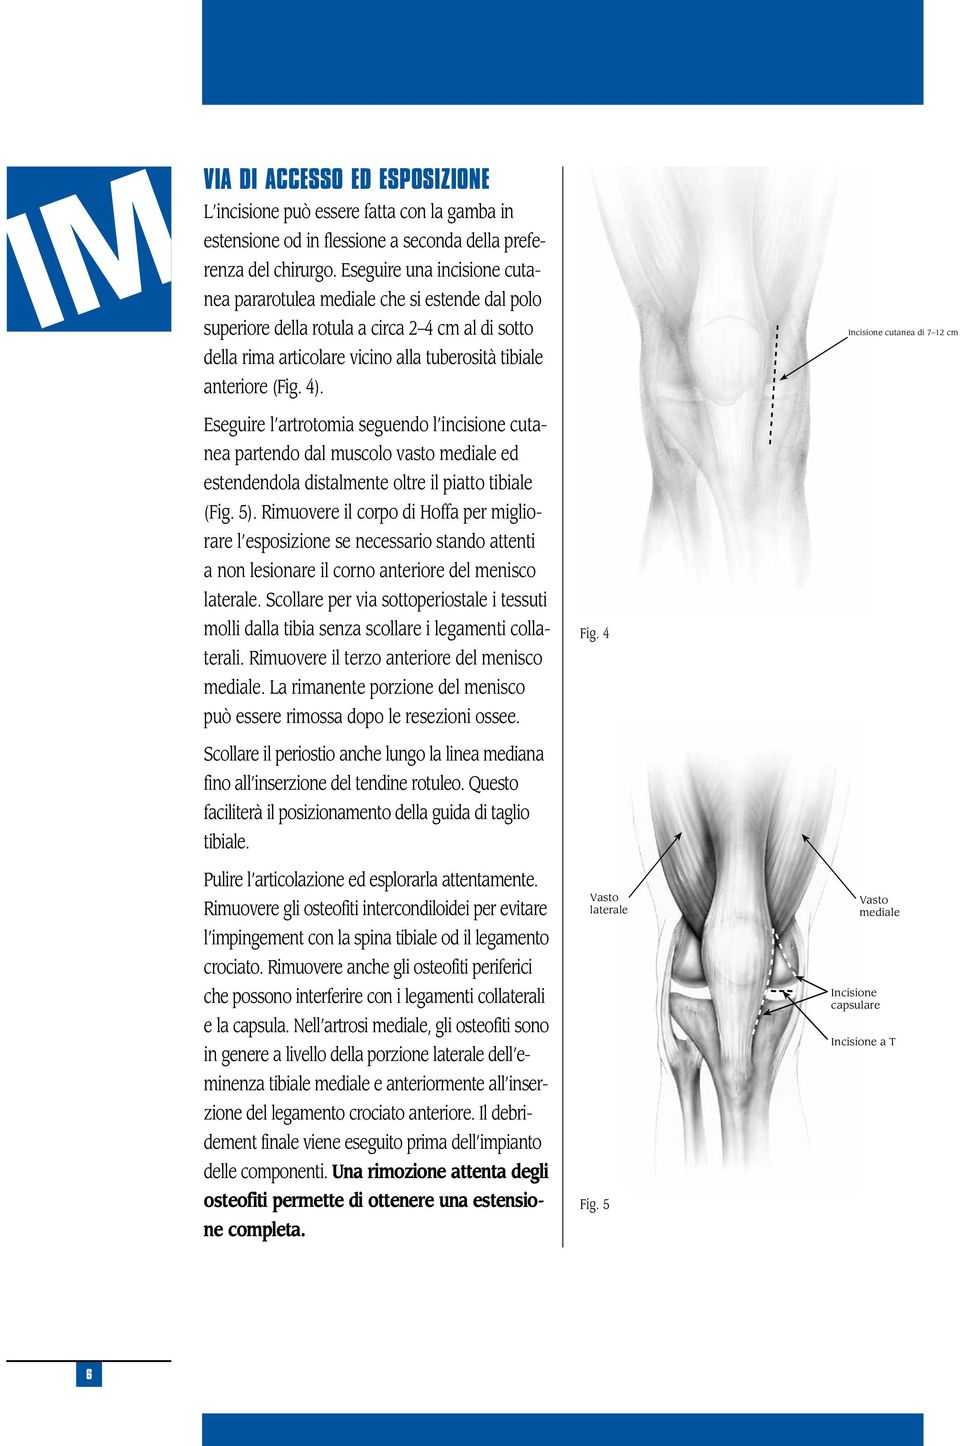 Incisione cutanea di 7 12 cm Eseguire l artrotomia seguendo l incisione cutanea partendo dal muscolo vasto mediale ed estendendola distalmente oltre il piatto tibiale (Fig. 5).